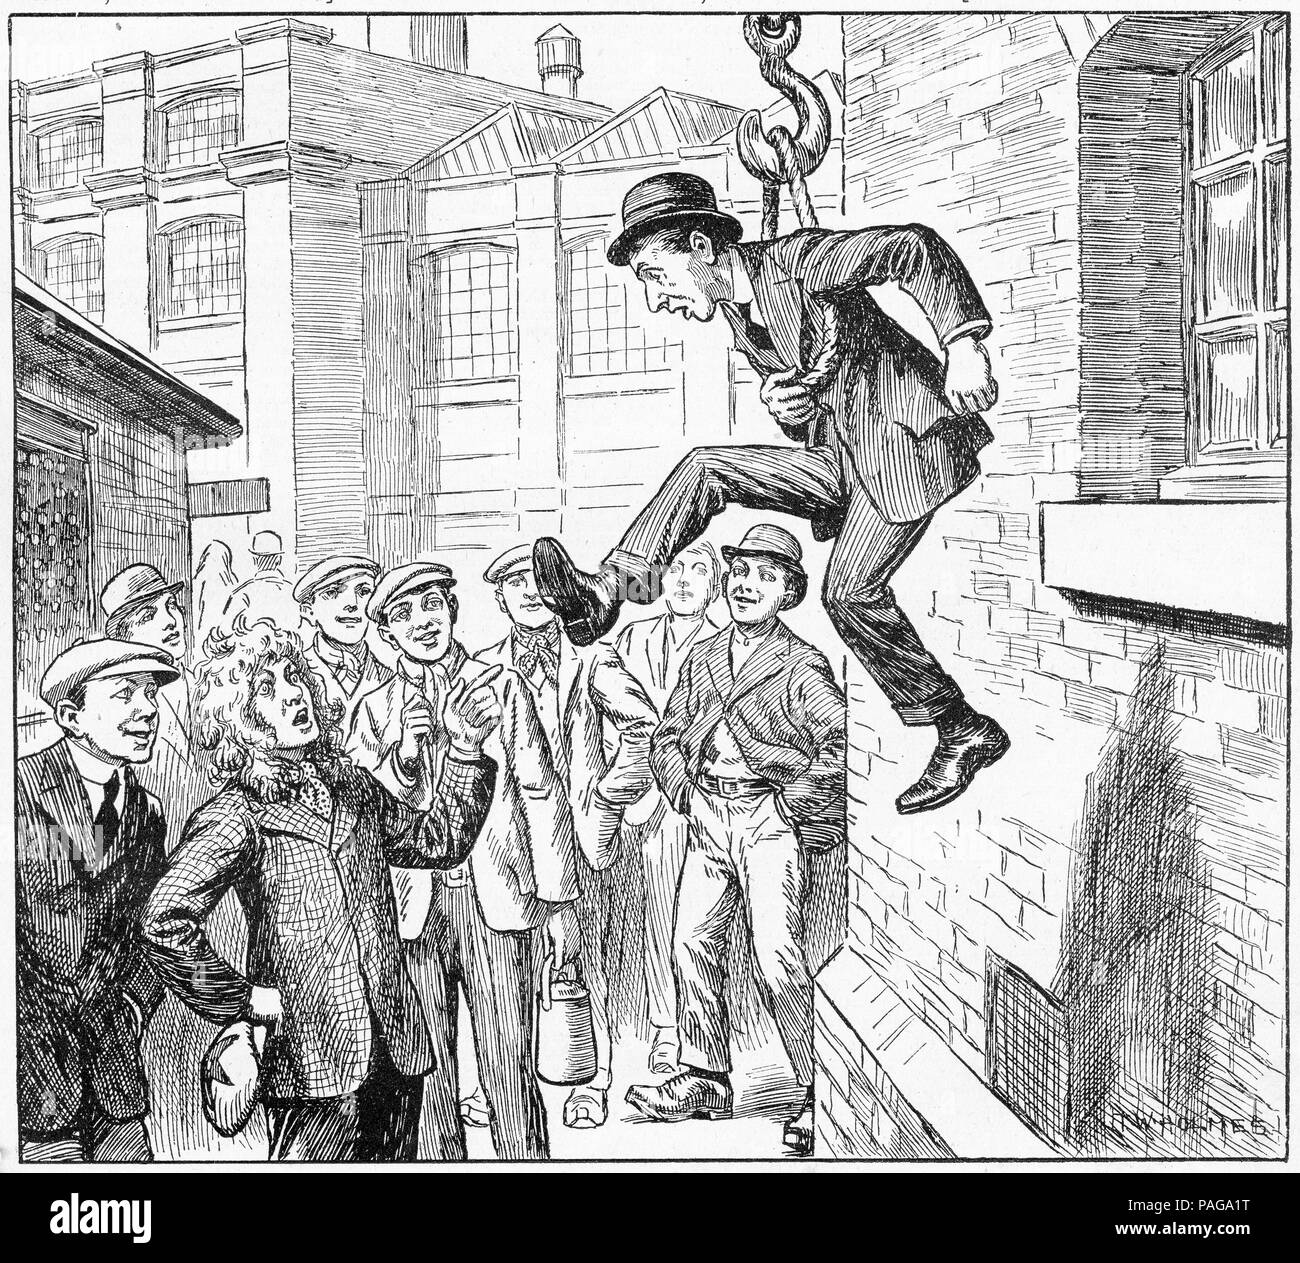 Gravur einer Bande von Männern Förderung jemand der Union durch ihn zur Aussetzung von einem Haken zu verbinden. Von Chums, einer illustrierten Zeitschrift für Jungen, 1915. Stockfoto